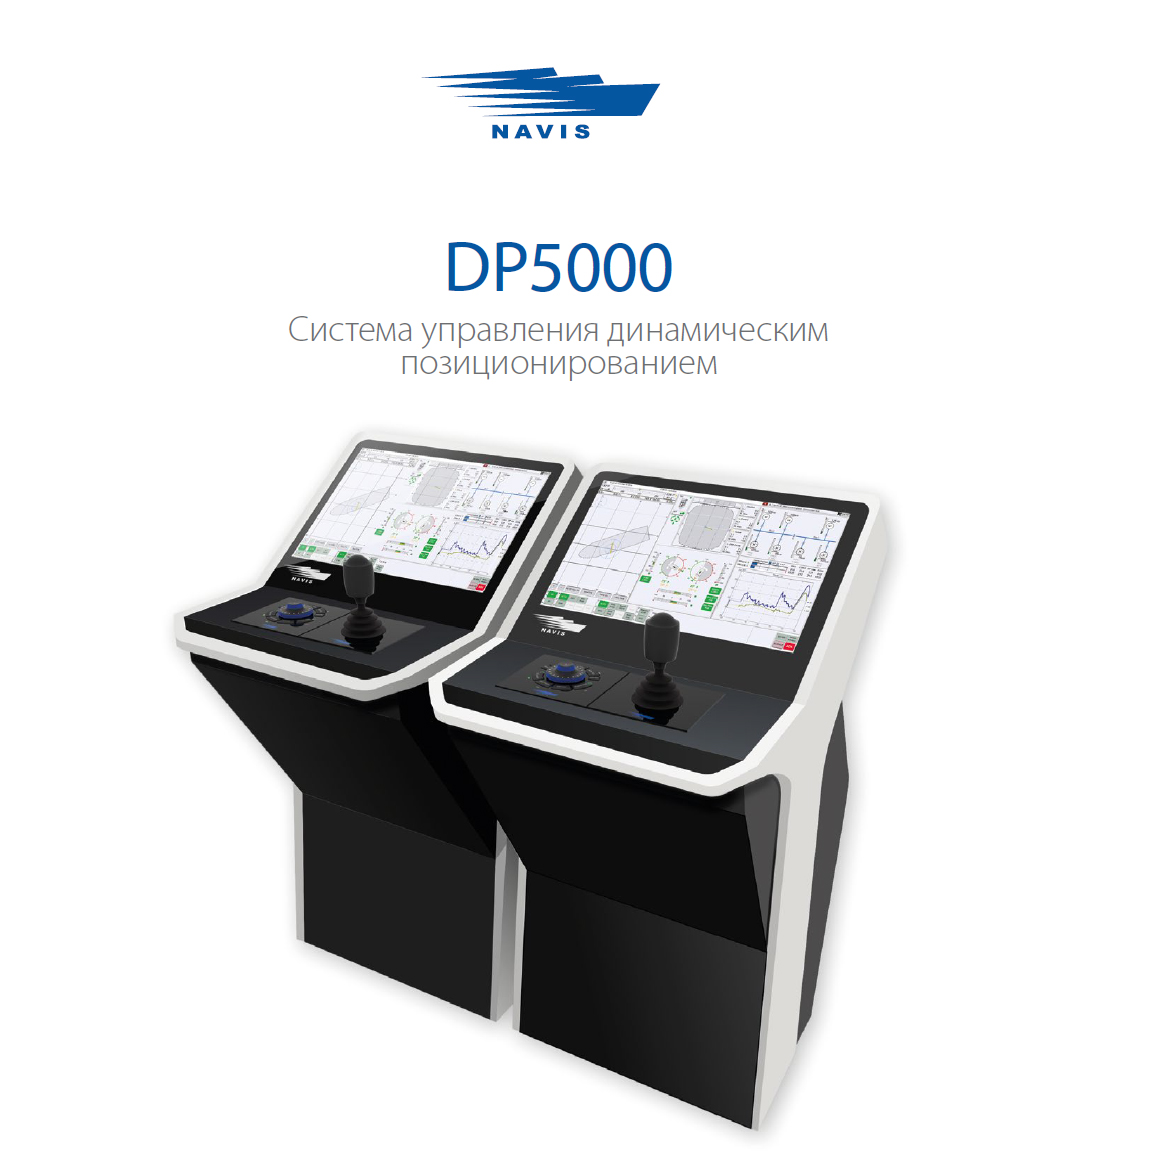 DP5000